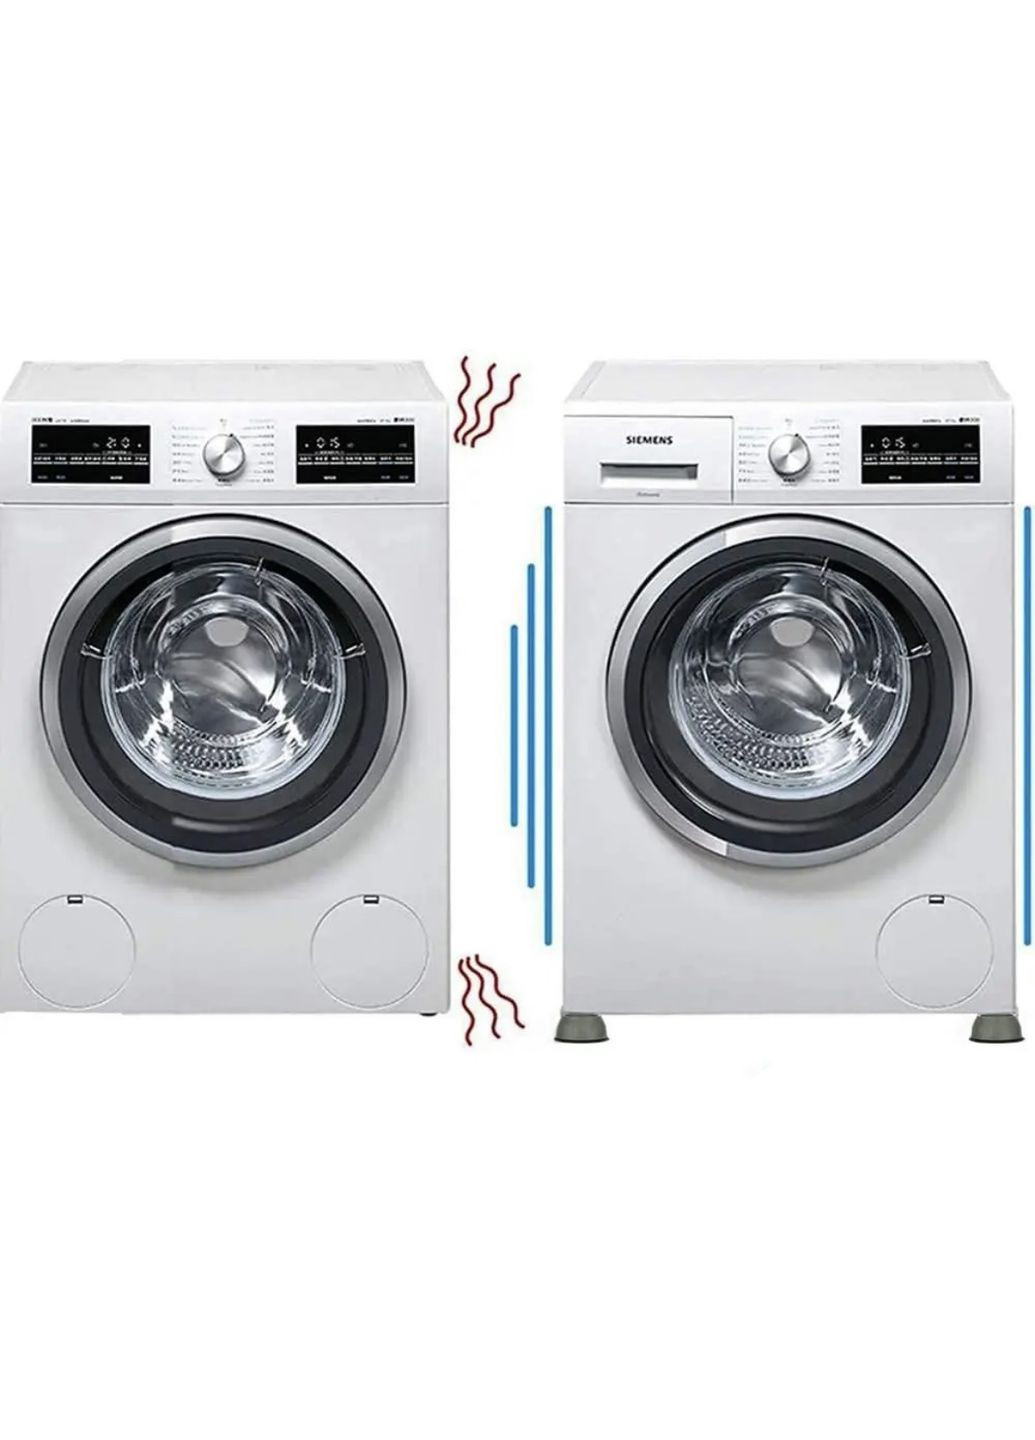 Антивібраційні підставки для пральної машини Let's Shop (265211516)